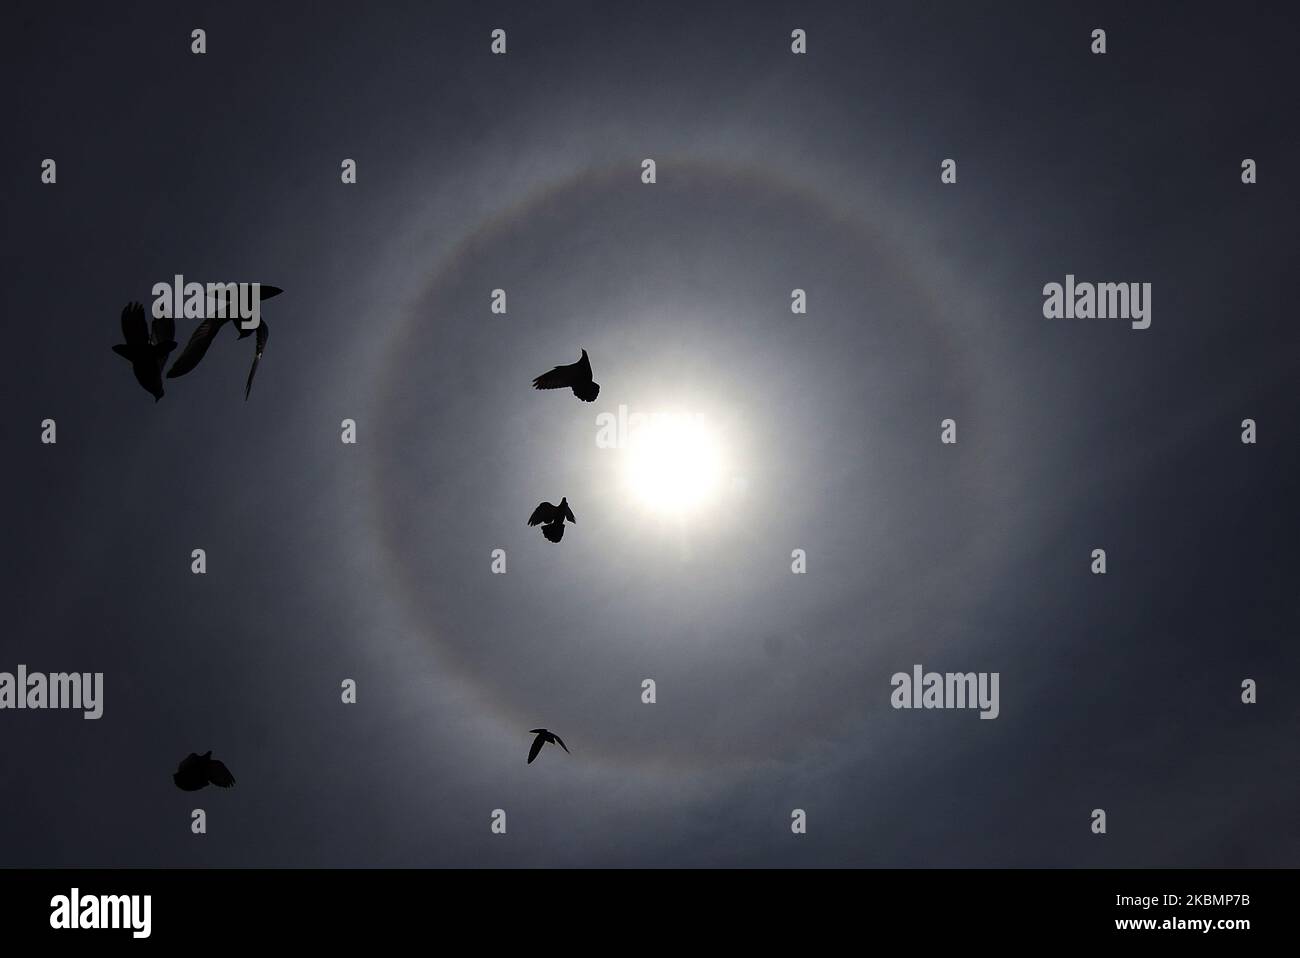 Sonnenhalo wird am 22. April 2020 als Tauben in Srinagar, Kaschmir, gesehen. Halo ist ein optisches Phänomen, das durch Licht (typischerweise von Sonne oder Mond) entsteht, das mit Eiskristallen in der Erdatmosphäre zusammenwirkt. (Foto von Faisal Khan/NurPhoto) Stockfoto